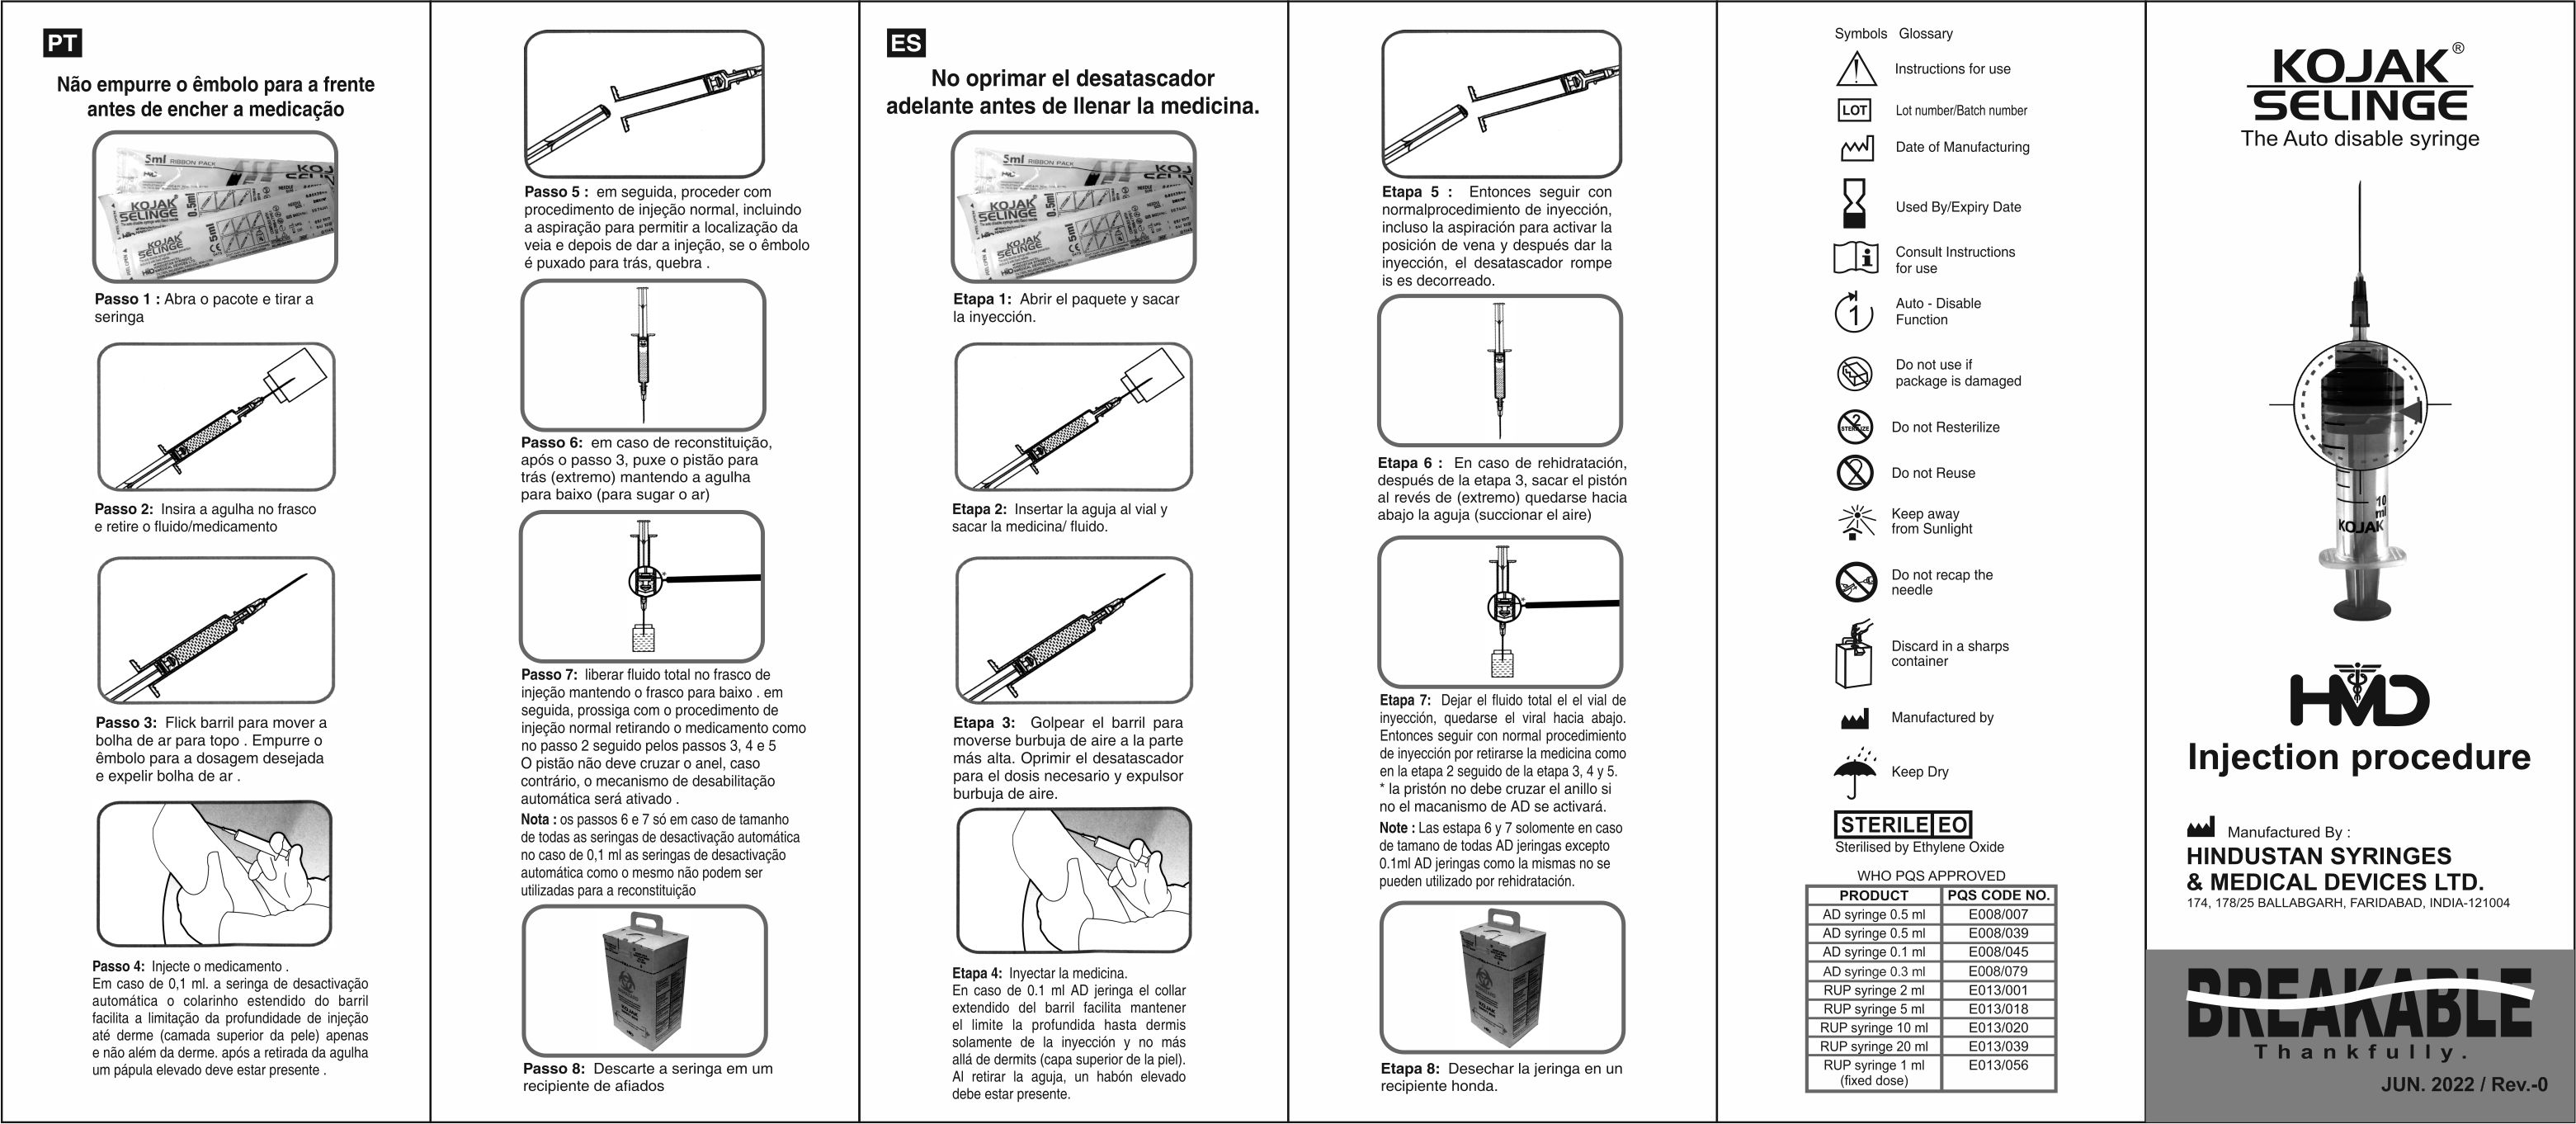 Safe and Sterile Kojak Selinge Auto-Disable Syringes for Medical